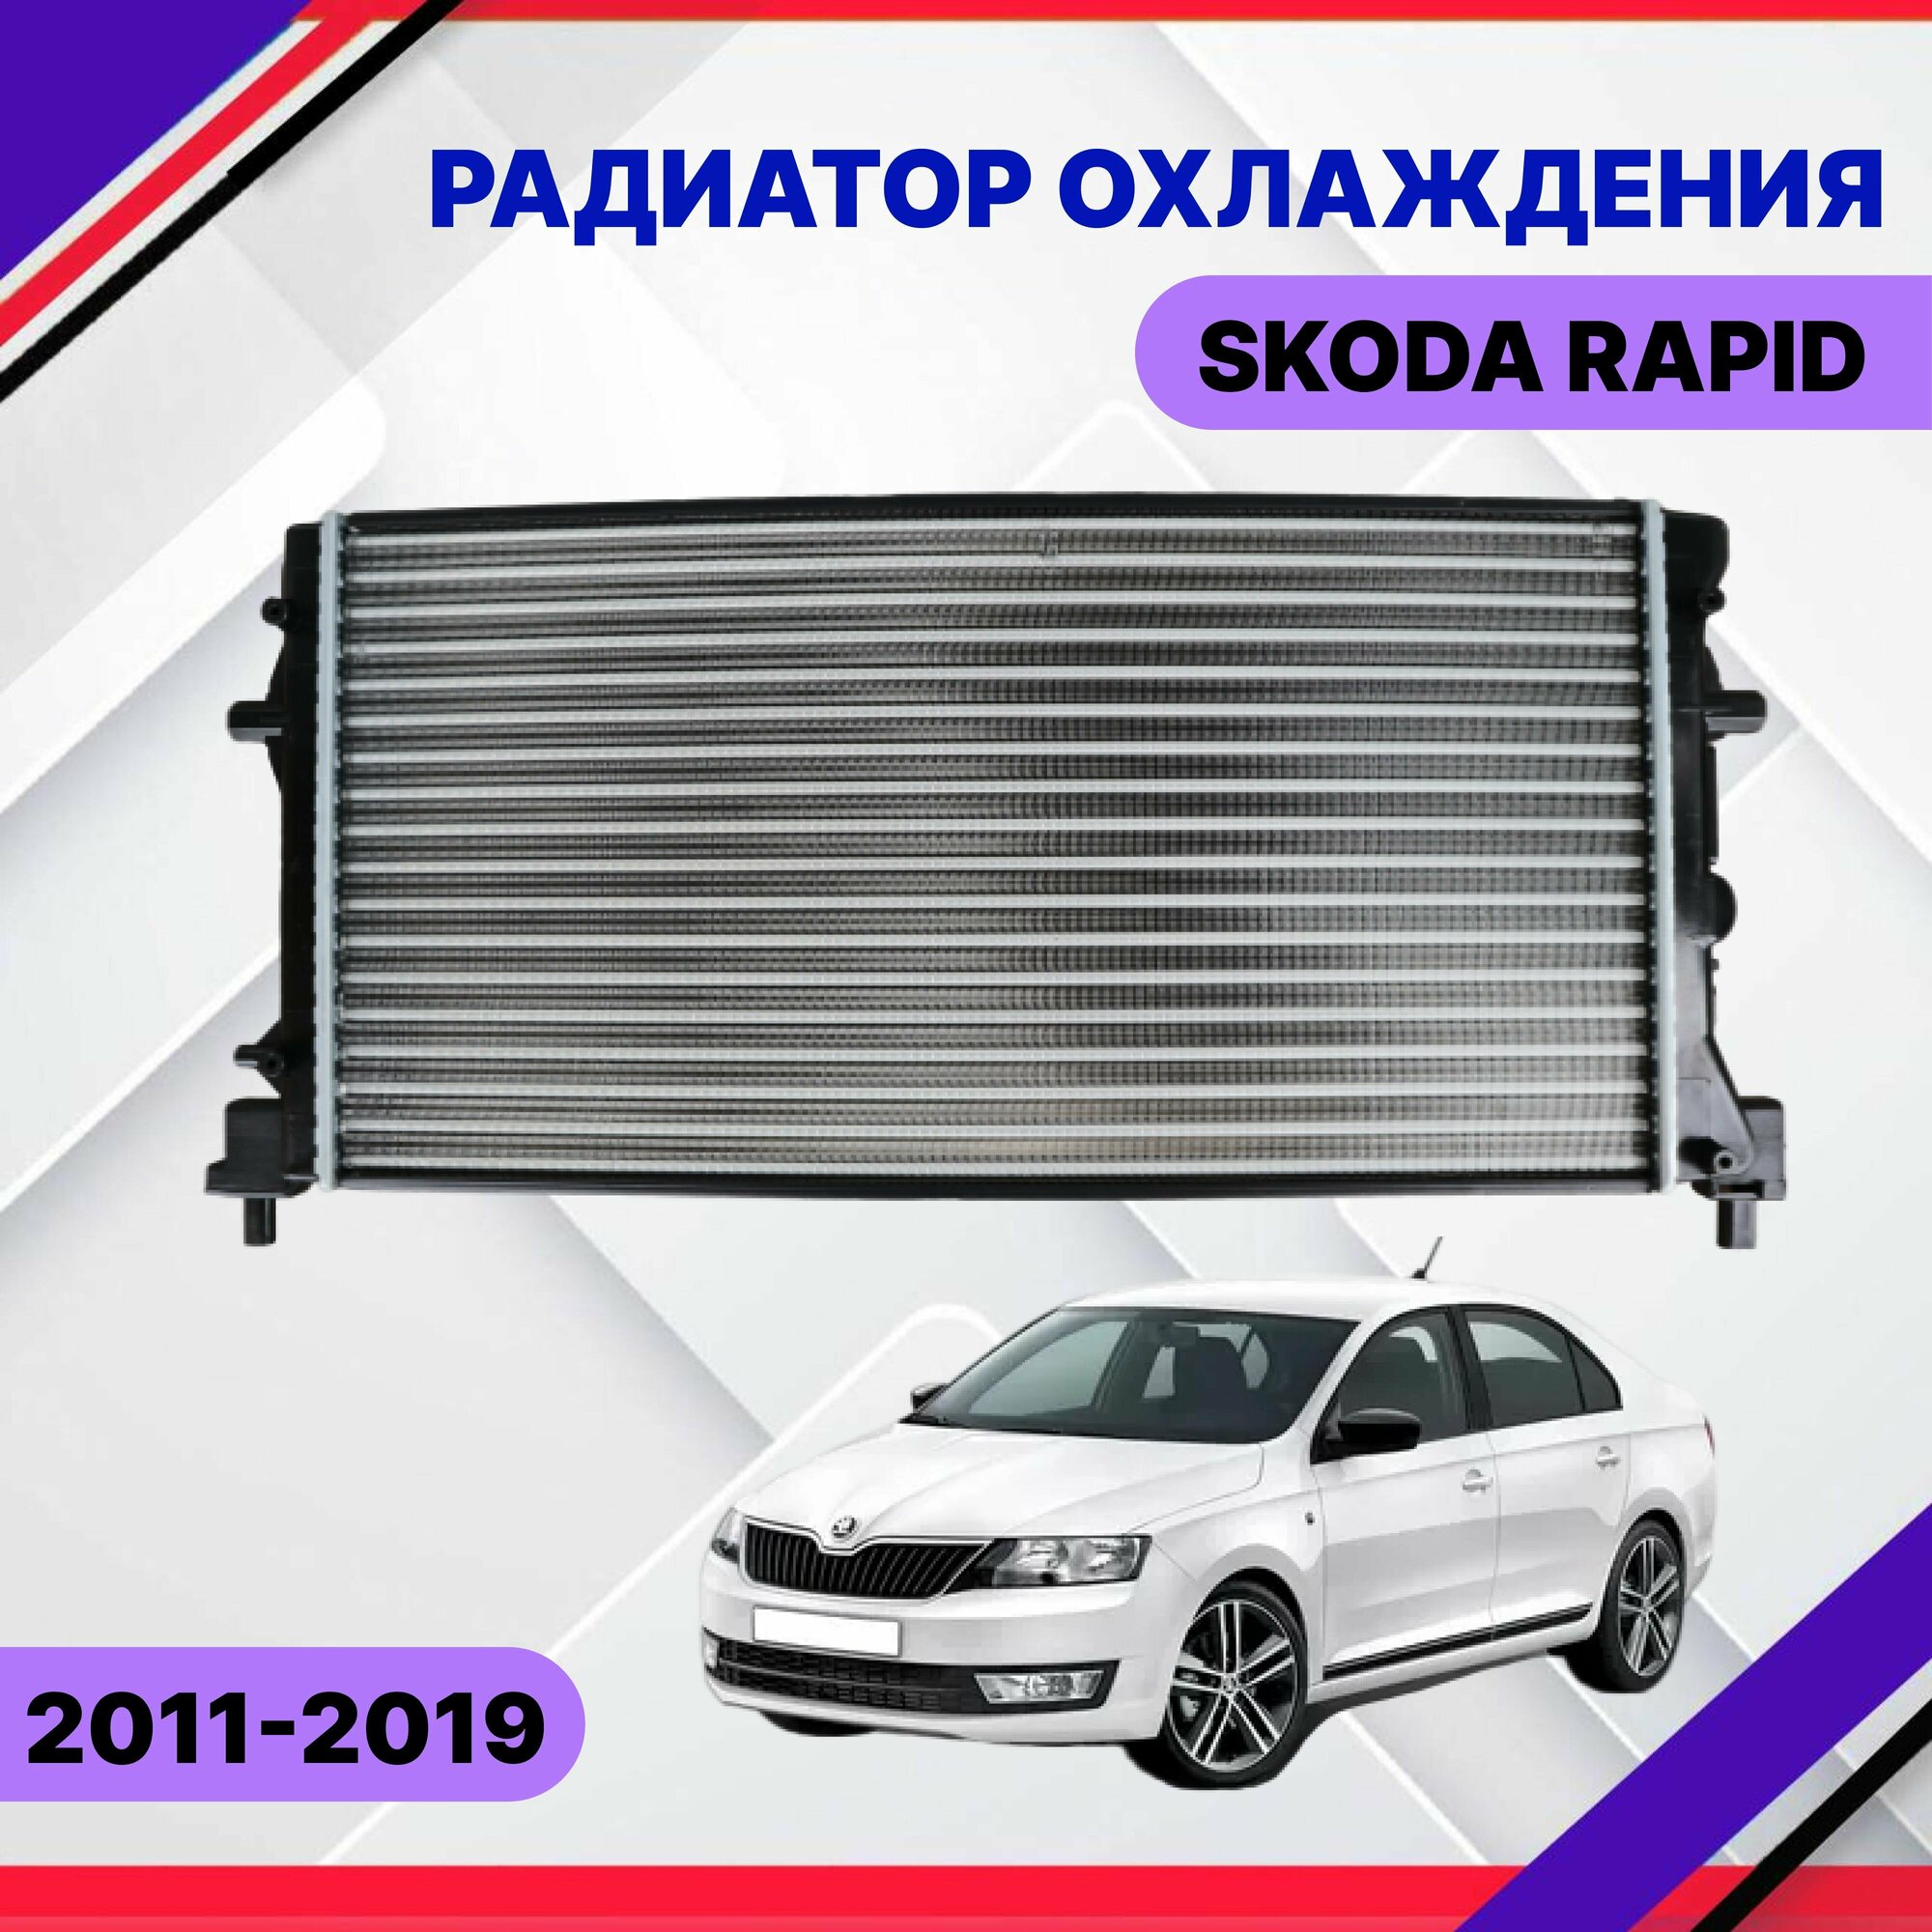 Радиатор охлаждения Skoda Rapid 2015-2017-2019 Шкода Рапид 6R0121253A